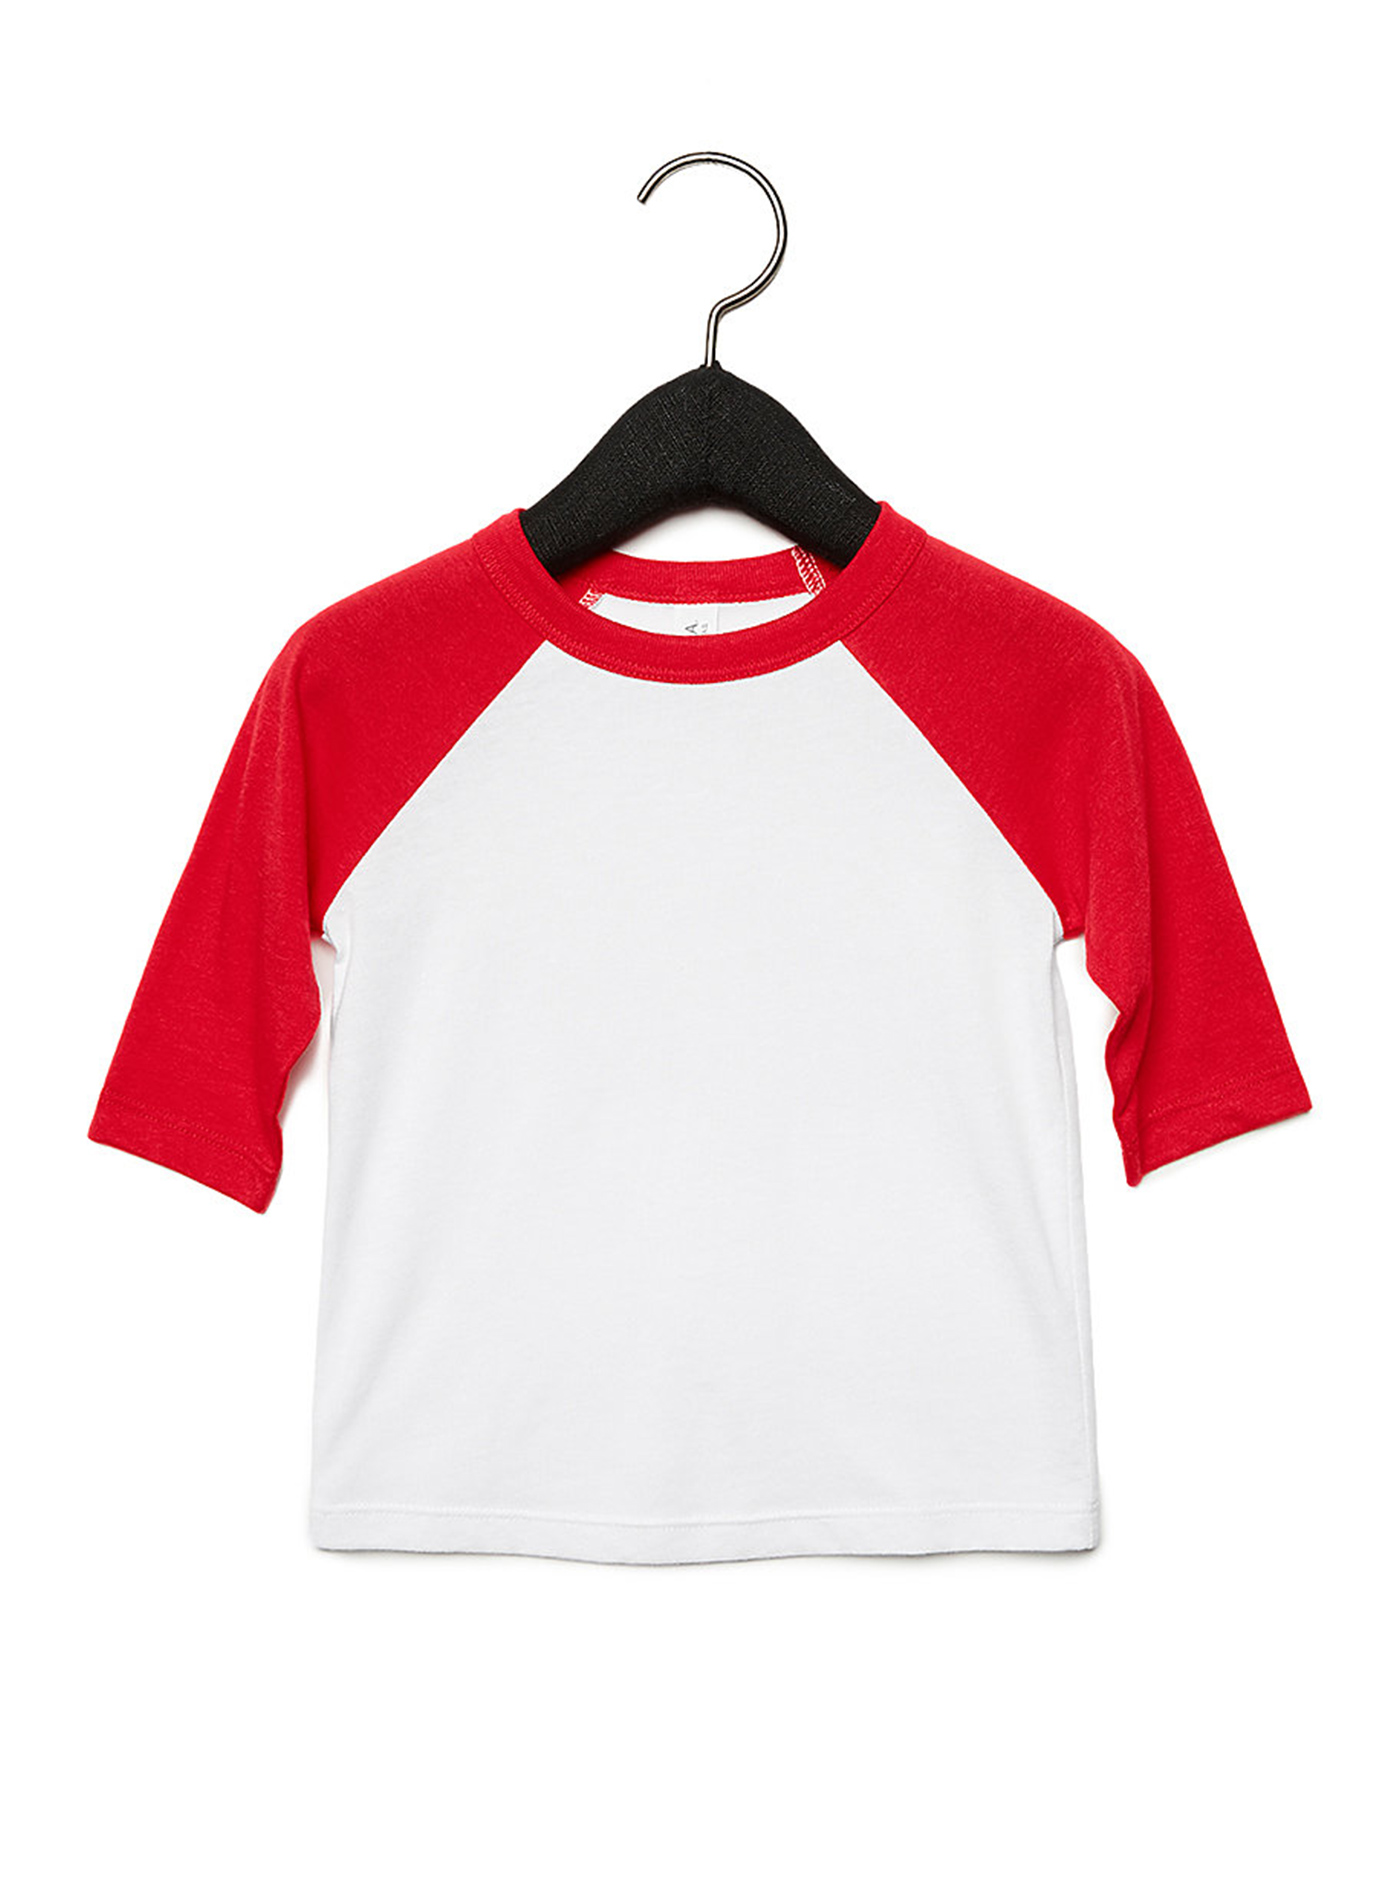 Dětské tričko Baseball Tee se 3/4 rukávem - Bílá a červená 5T (110)